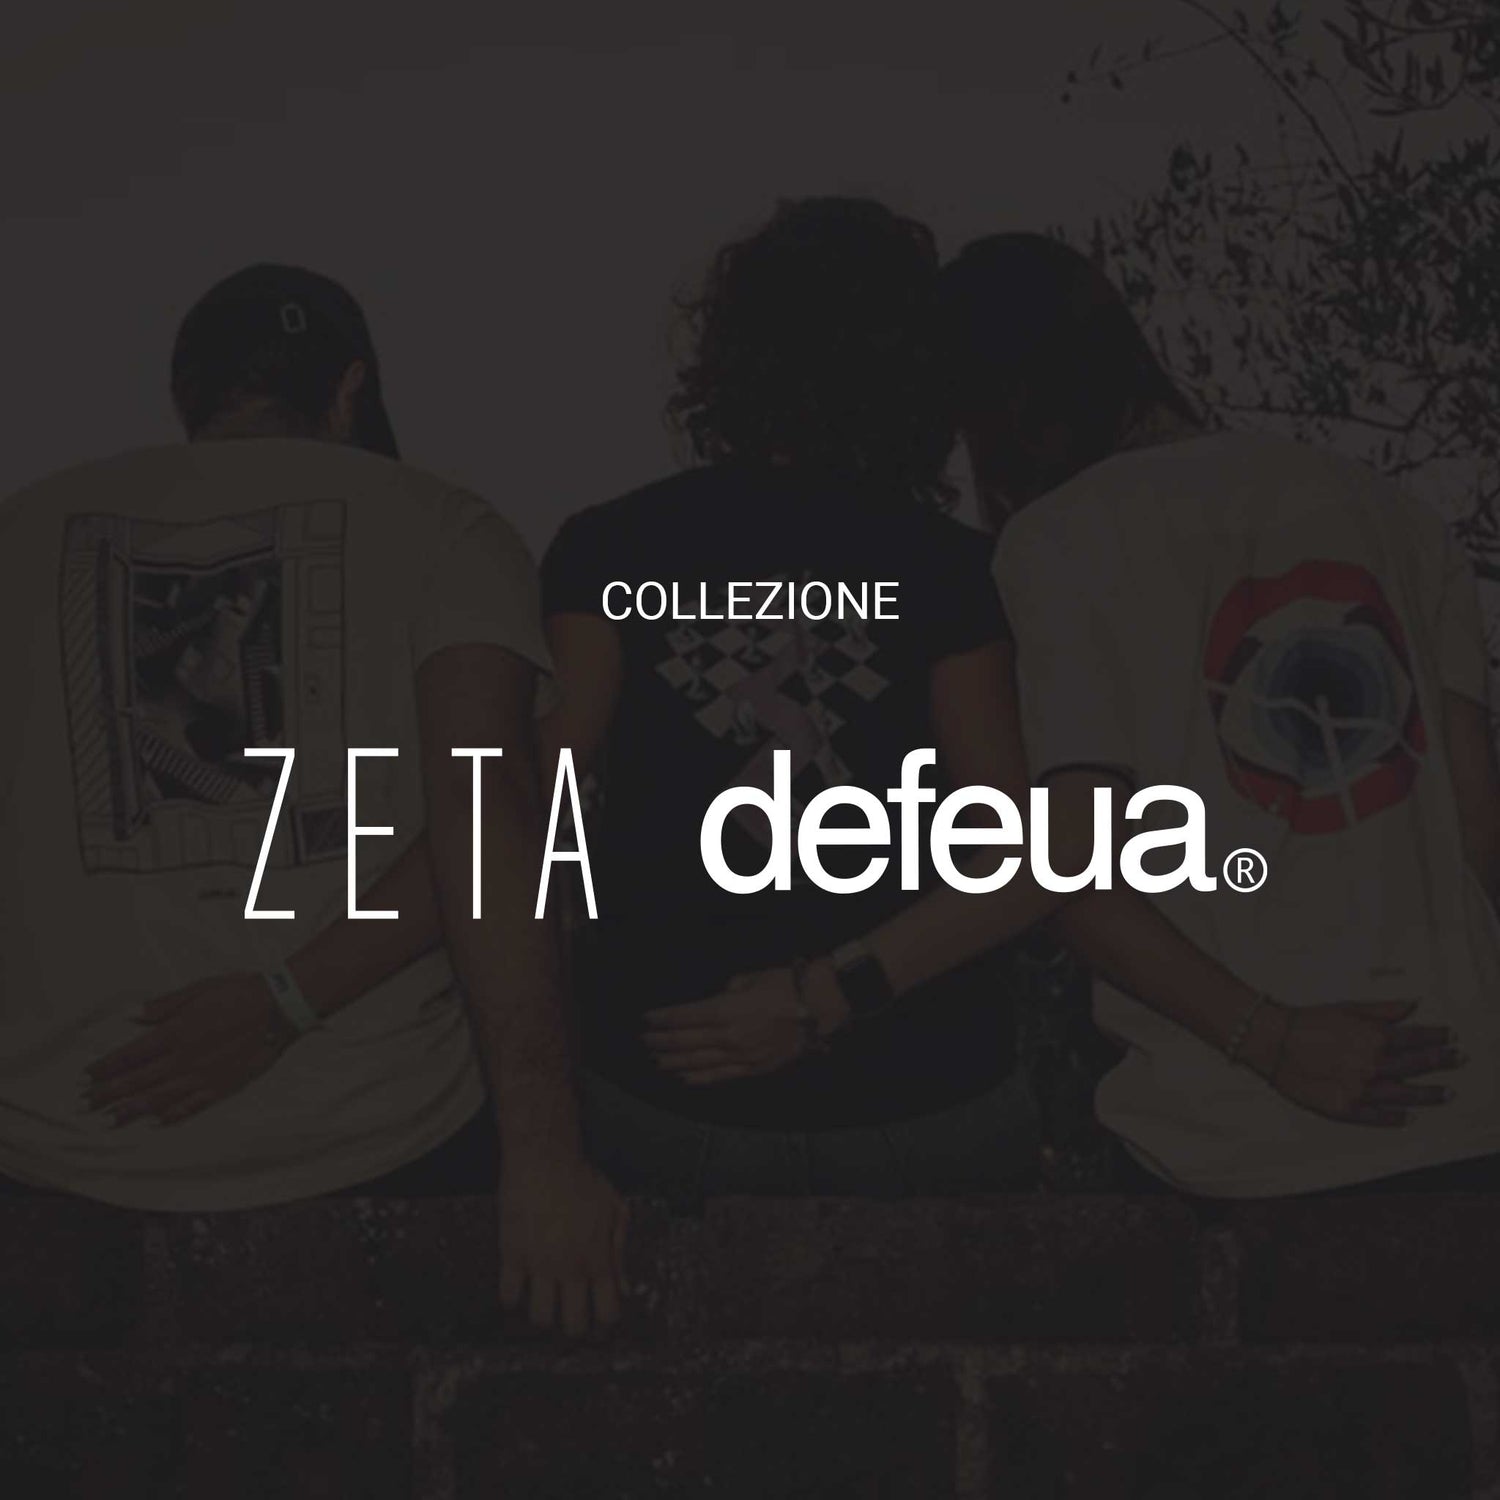 La collezione ZETA di Defeua®